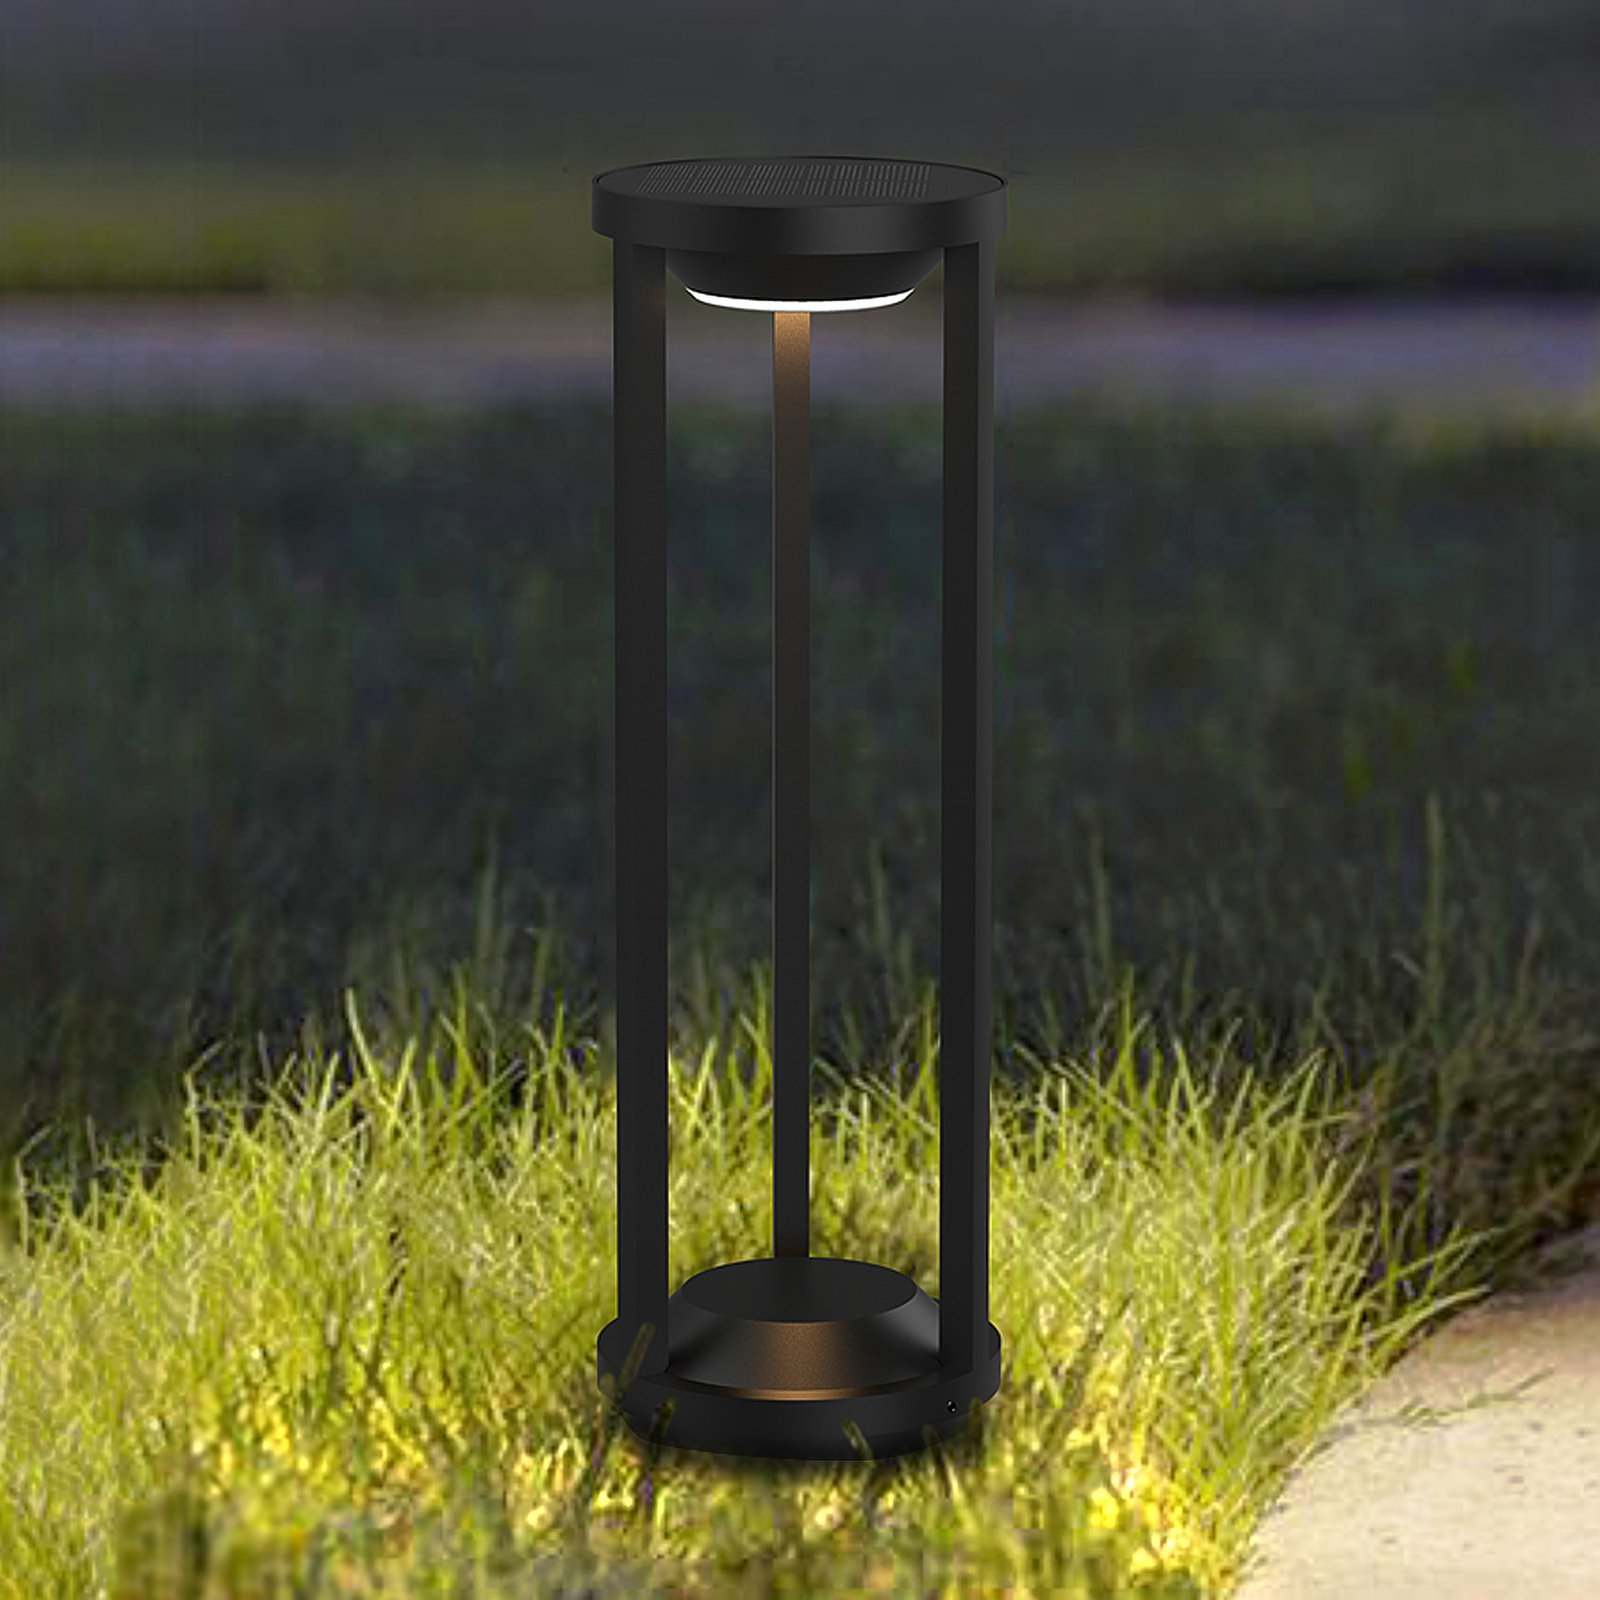 Borne lumineuse LED Pilastro, capteur, piquet de terre